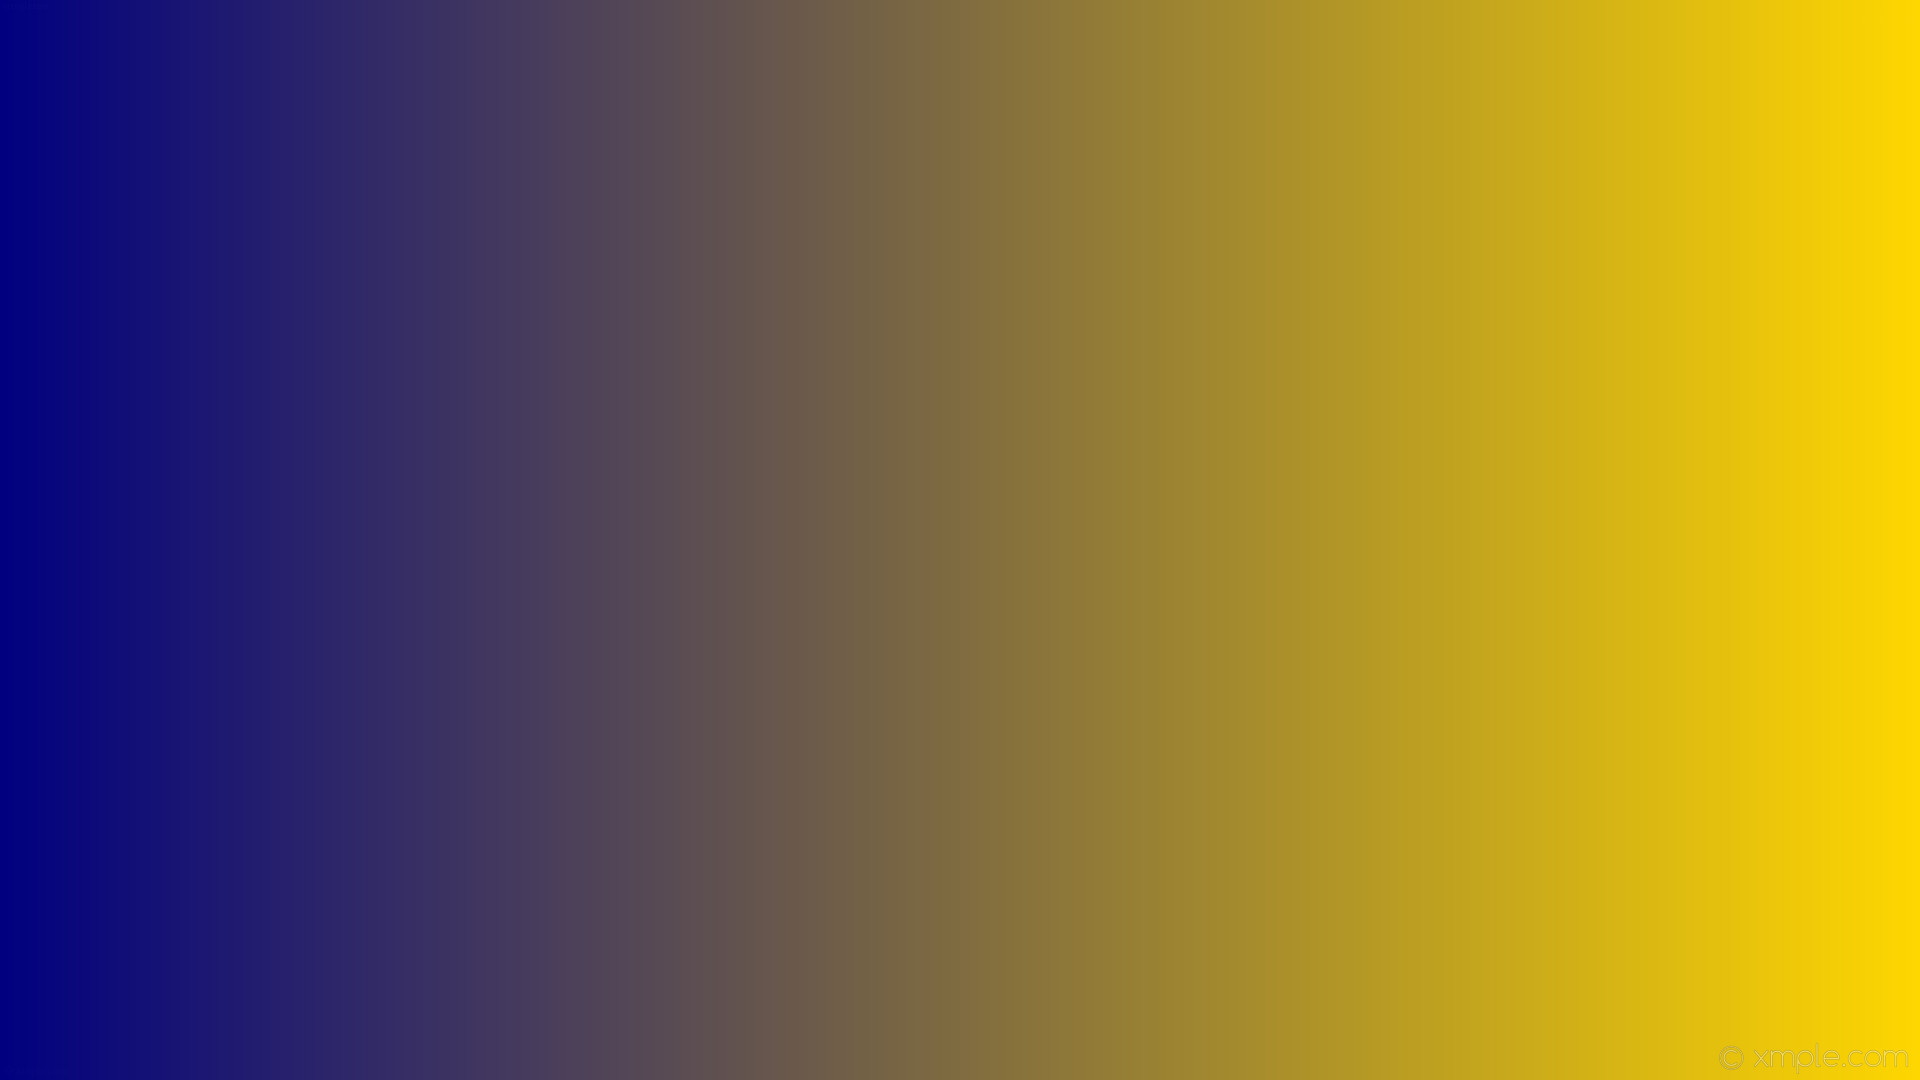 1920x1080 wallpaper linear yellow gradient blue gold navy #ffd700 #000080 0Â°